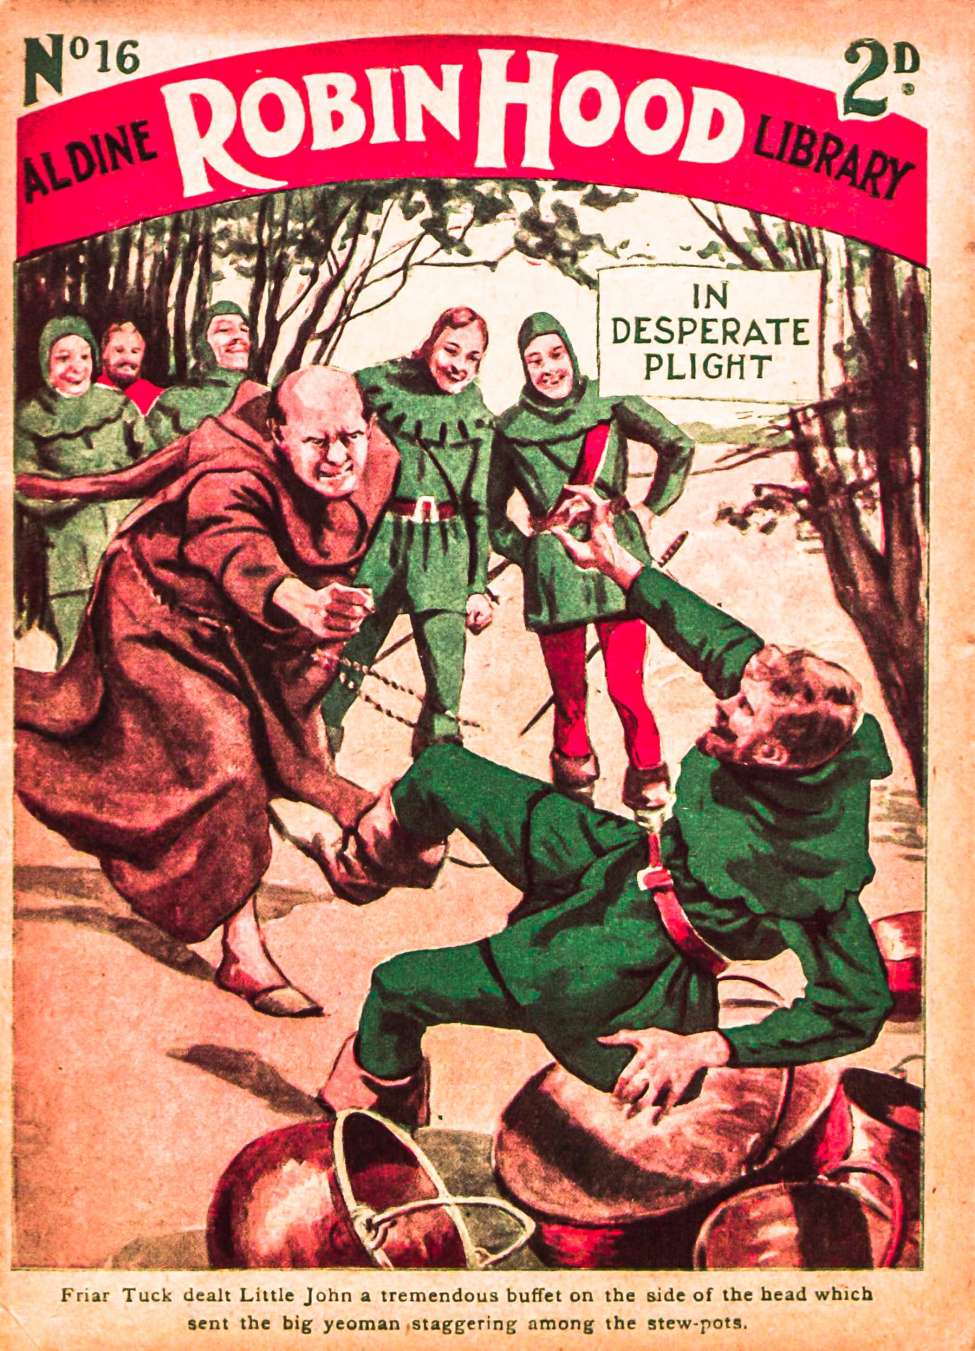 Book Cover For Aldine Robin Hood Library 16 - In Desperate Plight